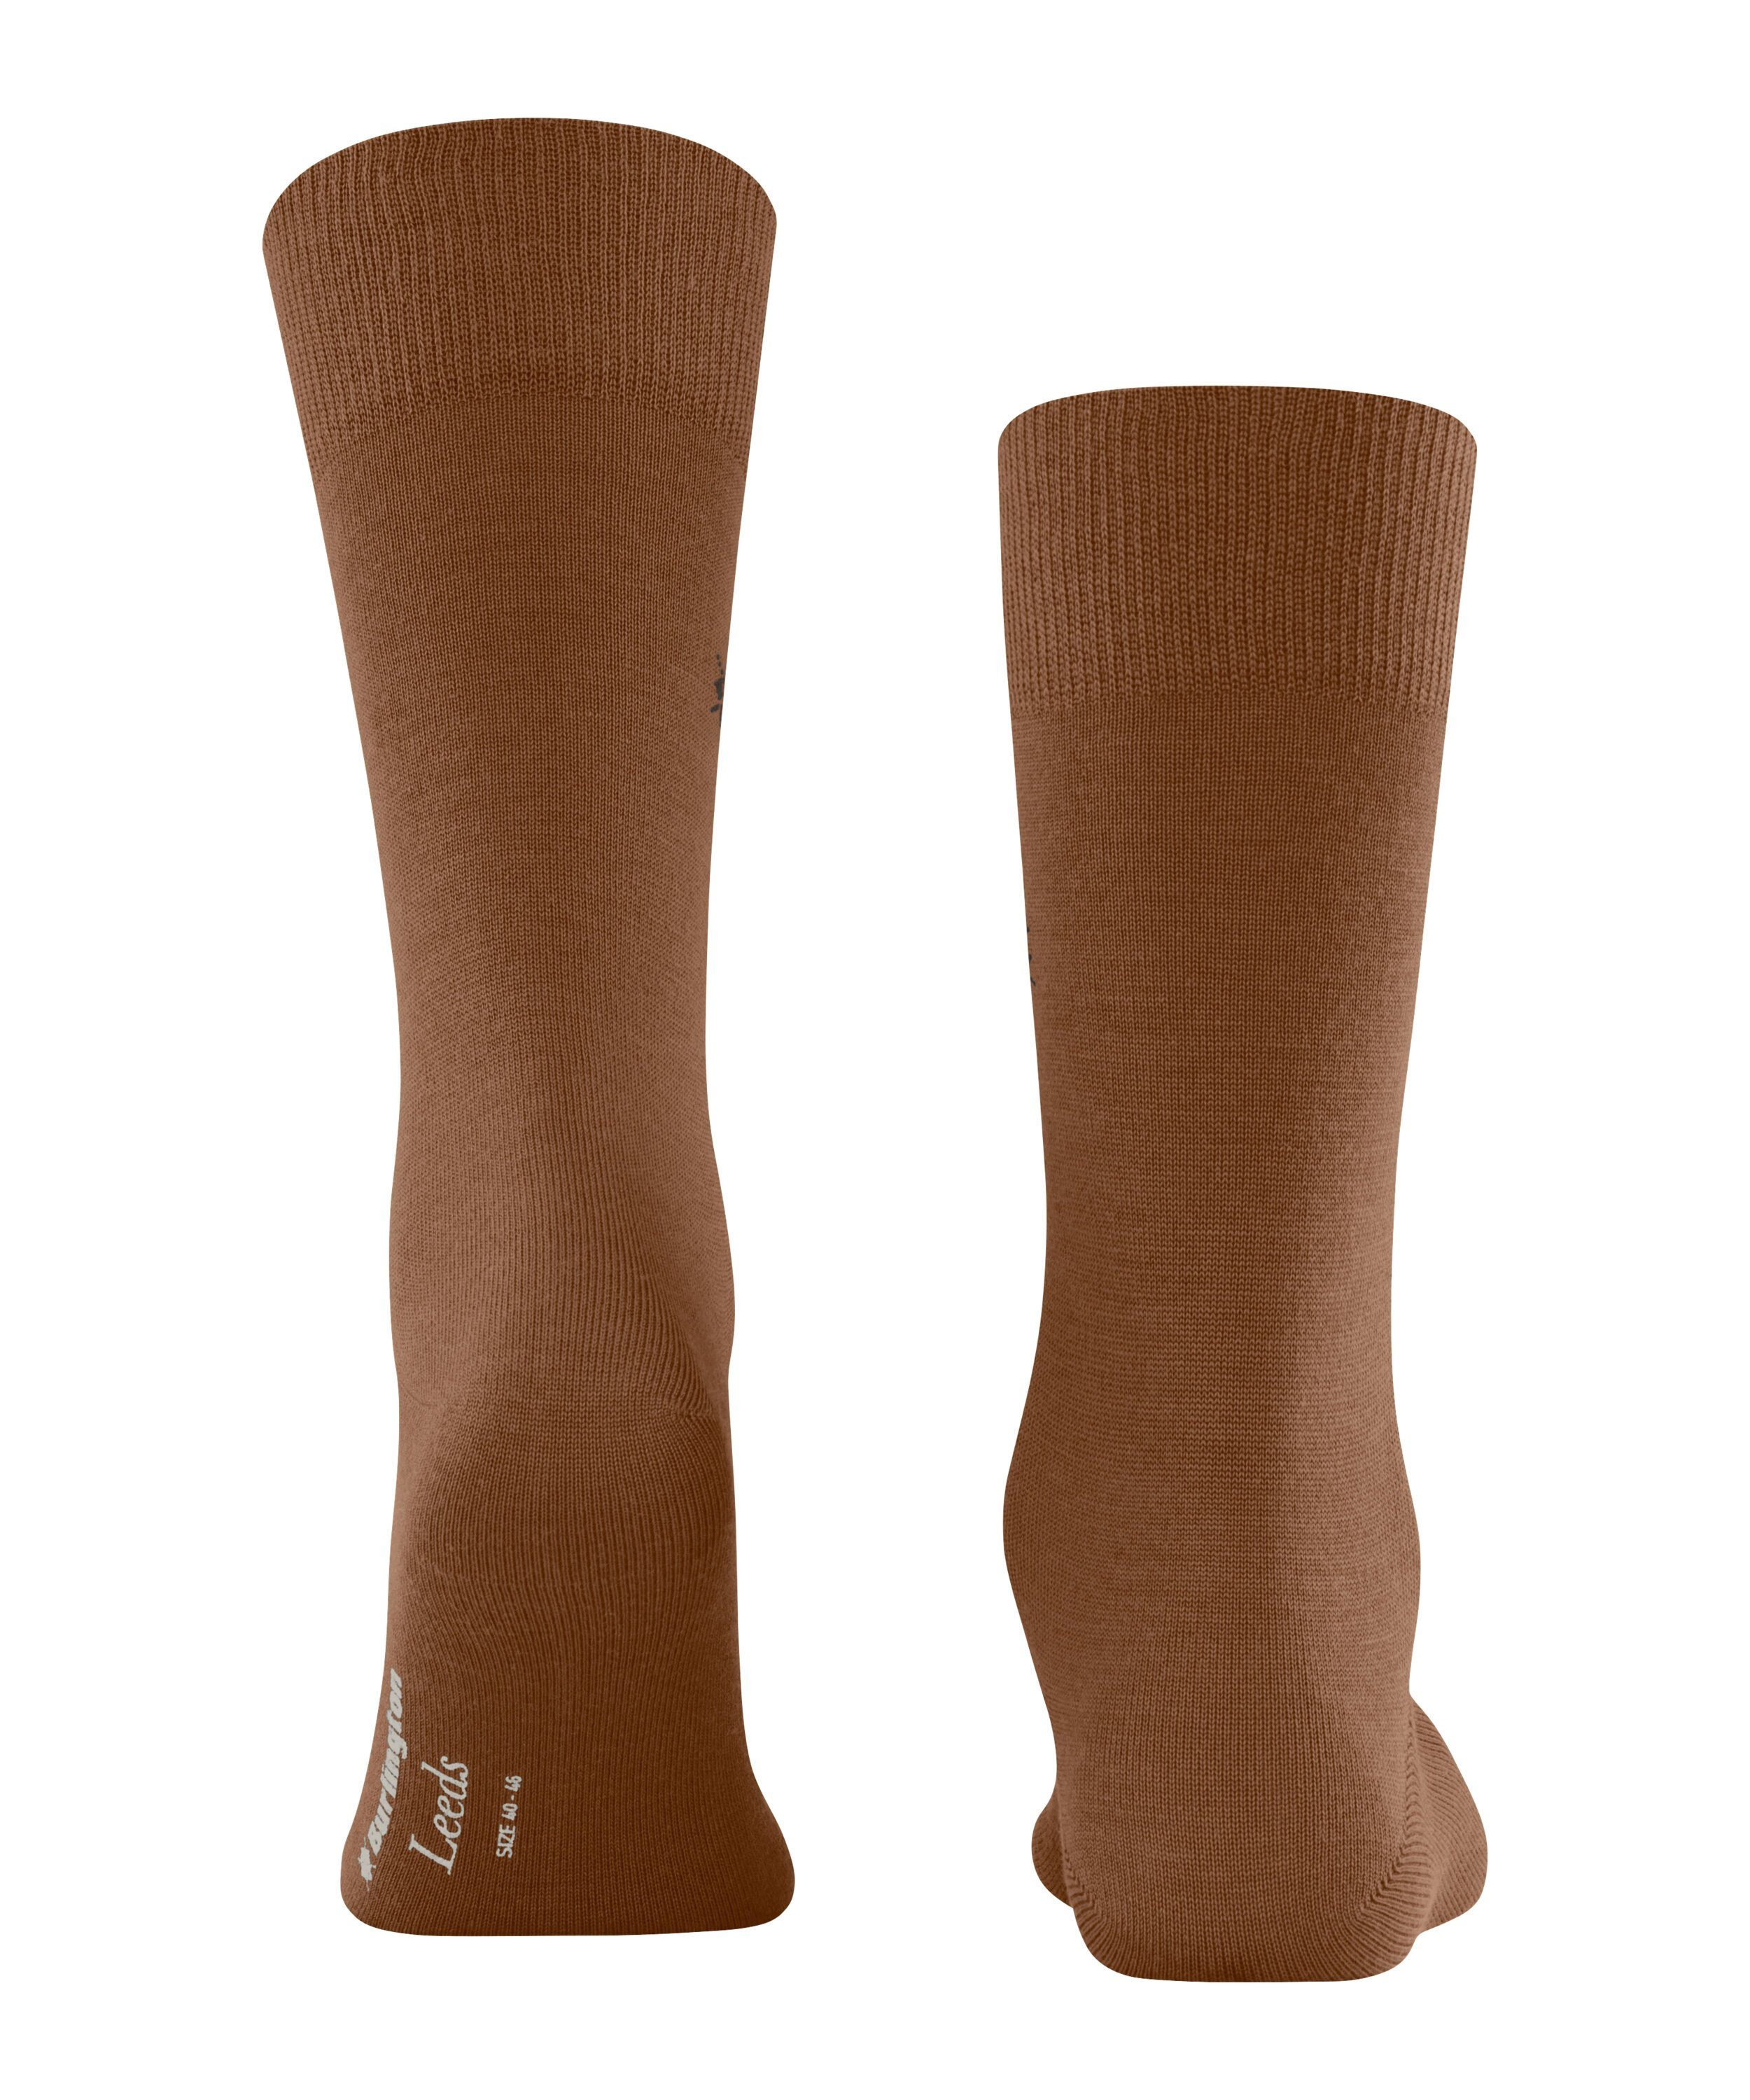 (5190) Socken Burlington (1-Paar) Leeds sierra